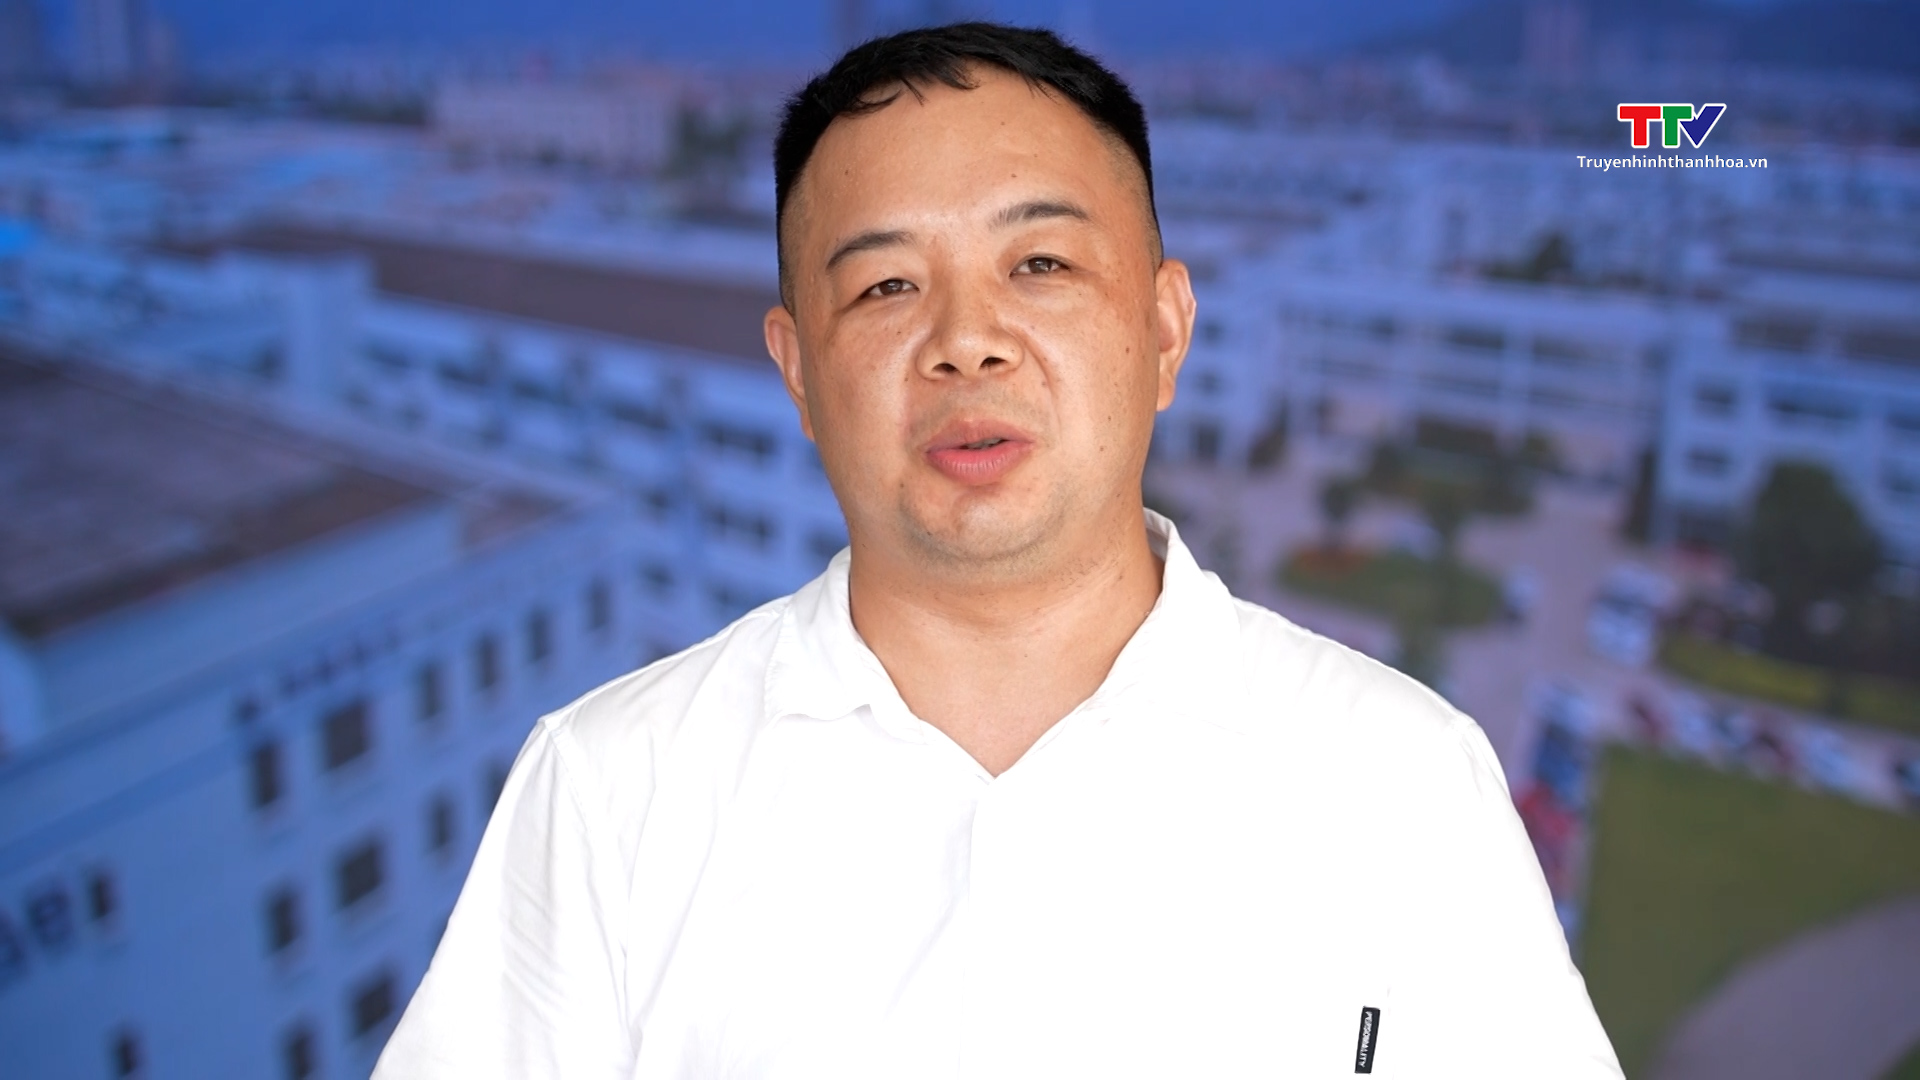 Sôi động hoạt động đầu tư tại Khu kinh tế Nghi Sơn và các Khu công nghiệp tỉnh Thanh Hóa- Ảnh 4.